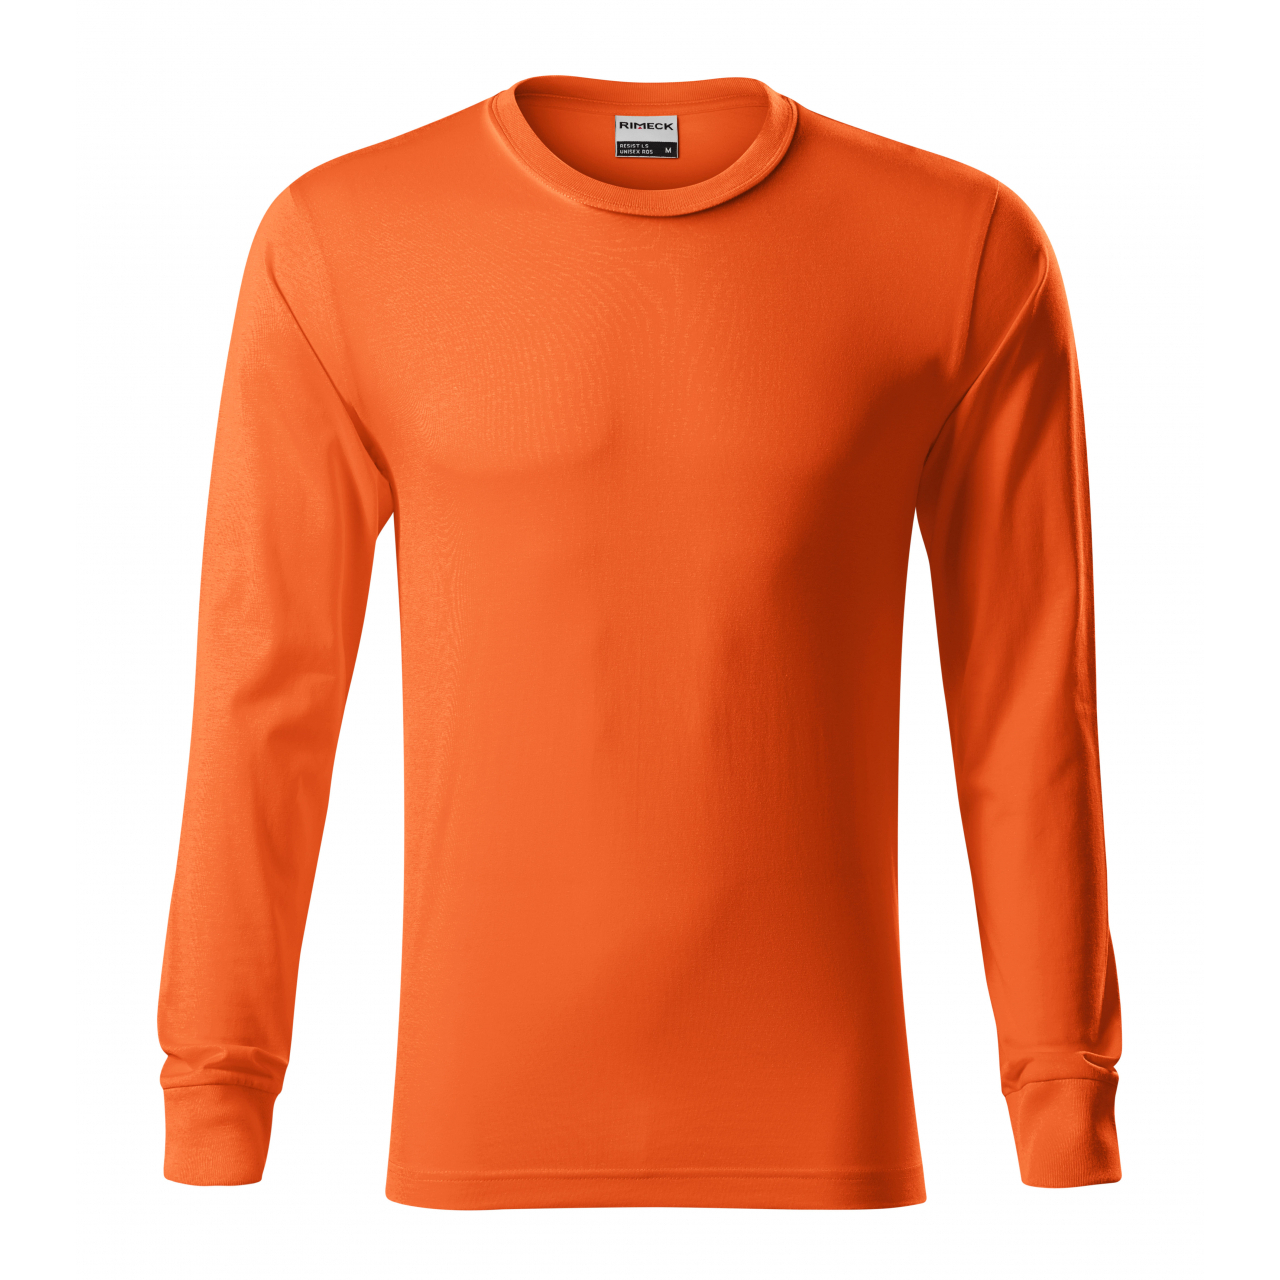 Tričko unisex Rimeck Ressist LS - oranžové, XL